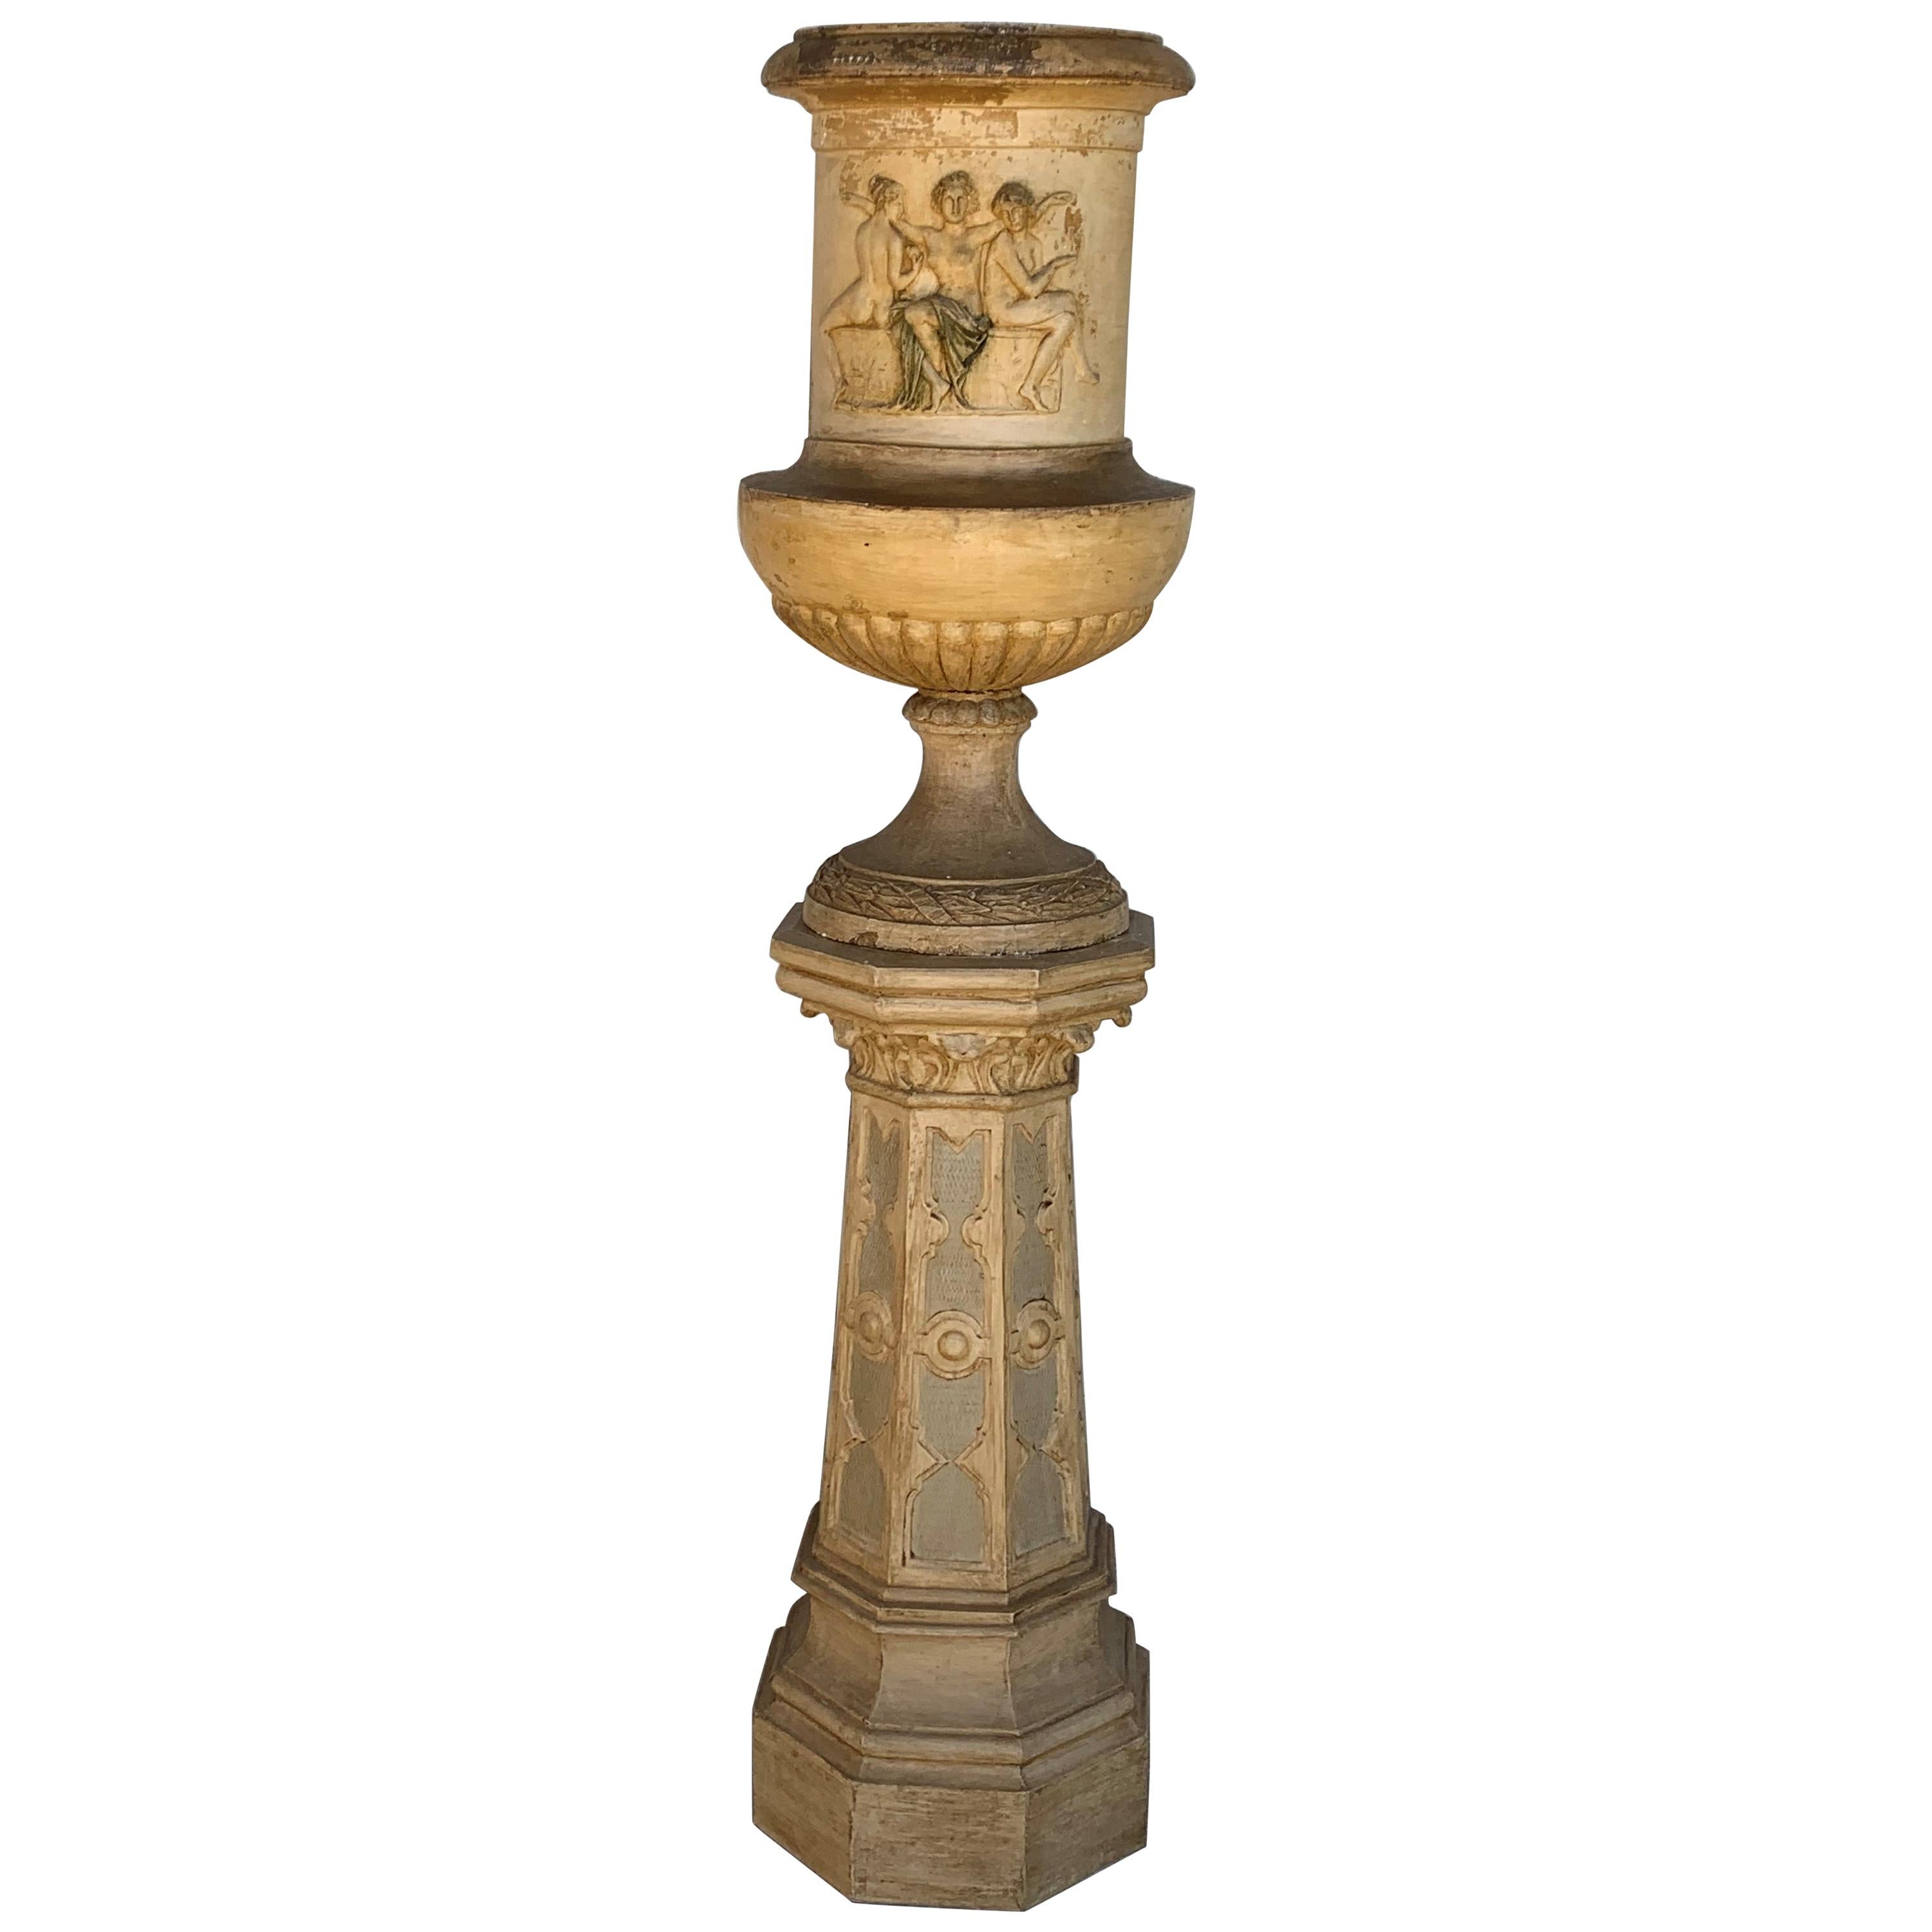 Grande urne de jardin néoclassique en terre cuite en forme de campane représentant des déesses